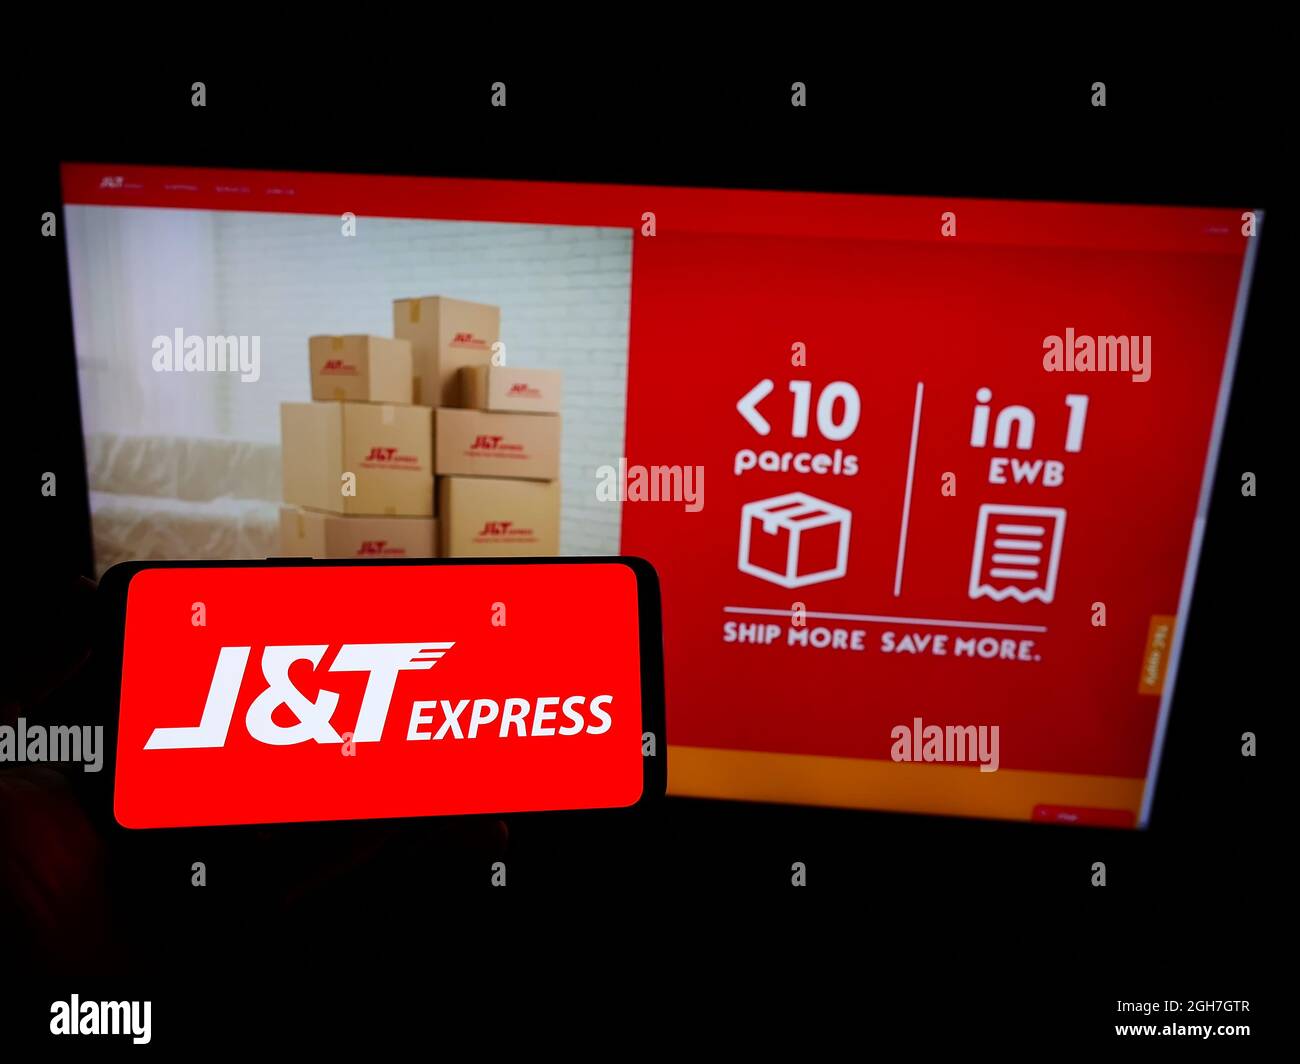 Personne tenant un téléphone portable avec le logo de la société indonésienne PT Global Jet Express (JT) à l'écran en face de la page Web d'affaires. Mise au point sur l'affichage du téléphone. Banque D'Images